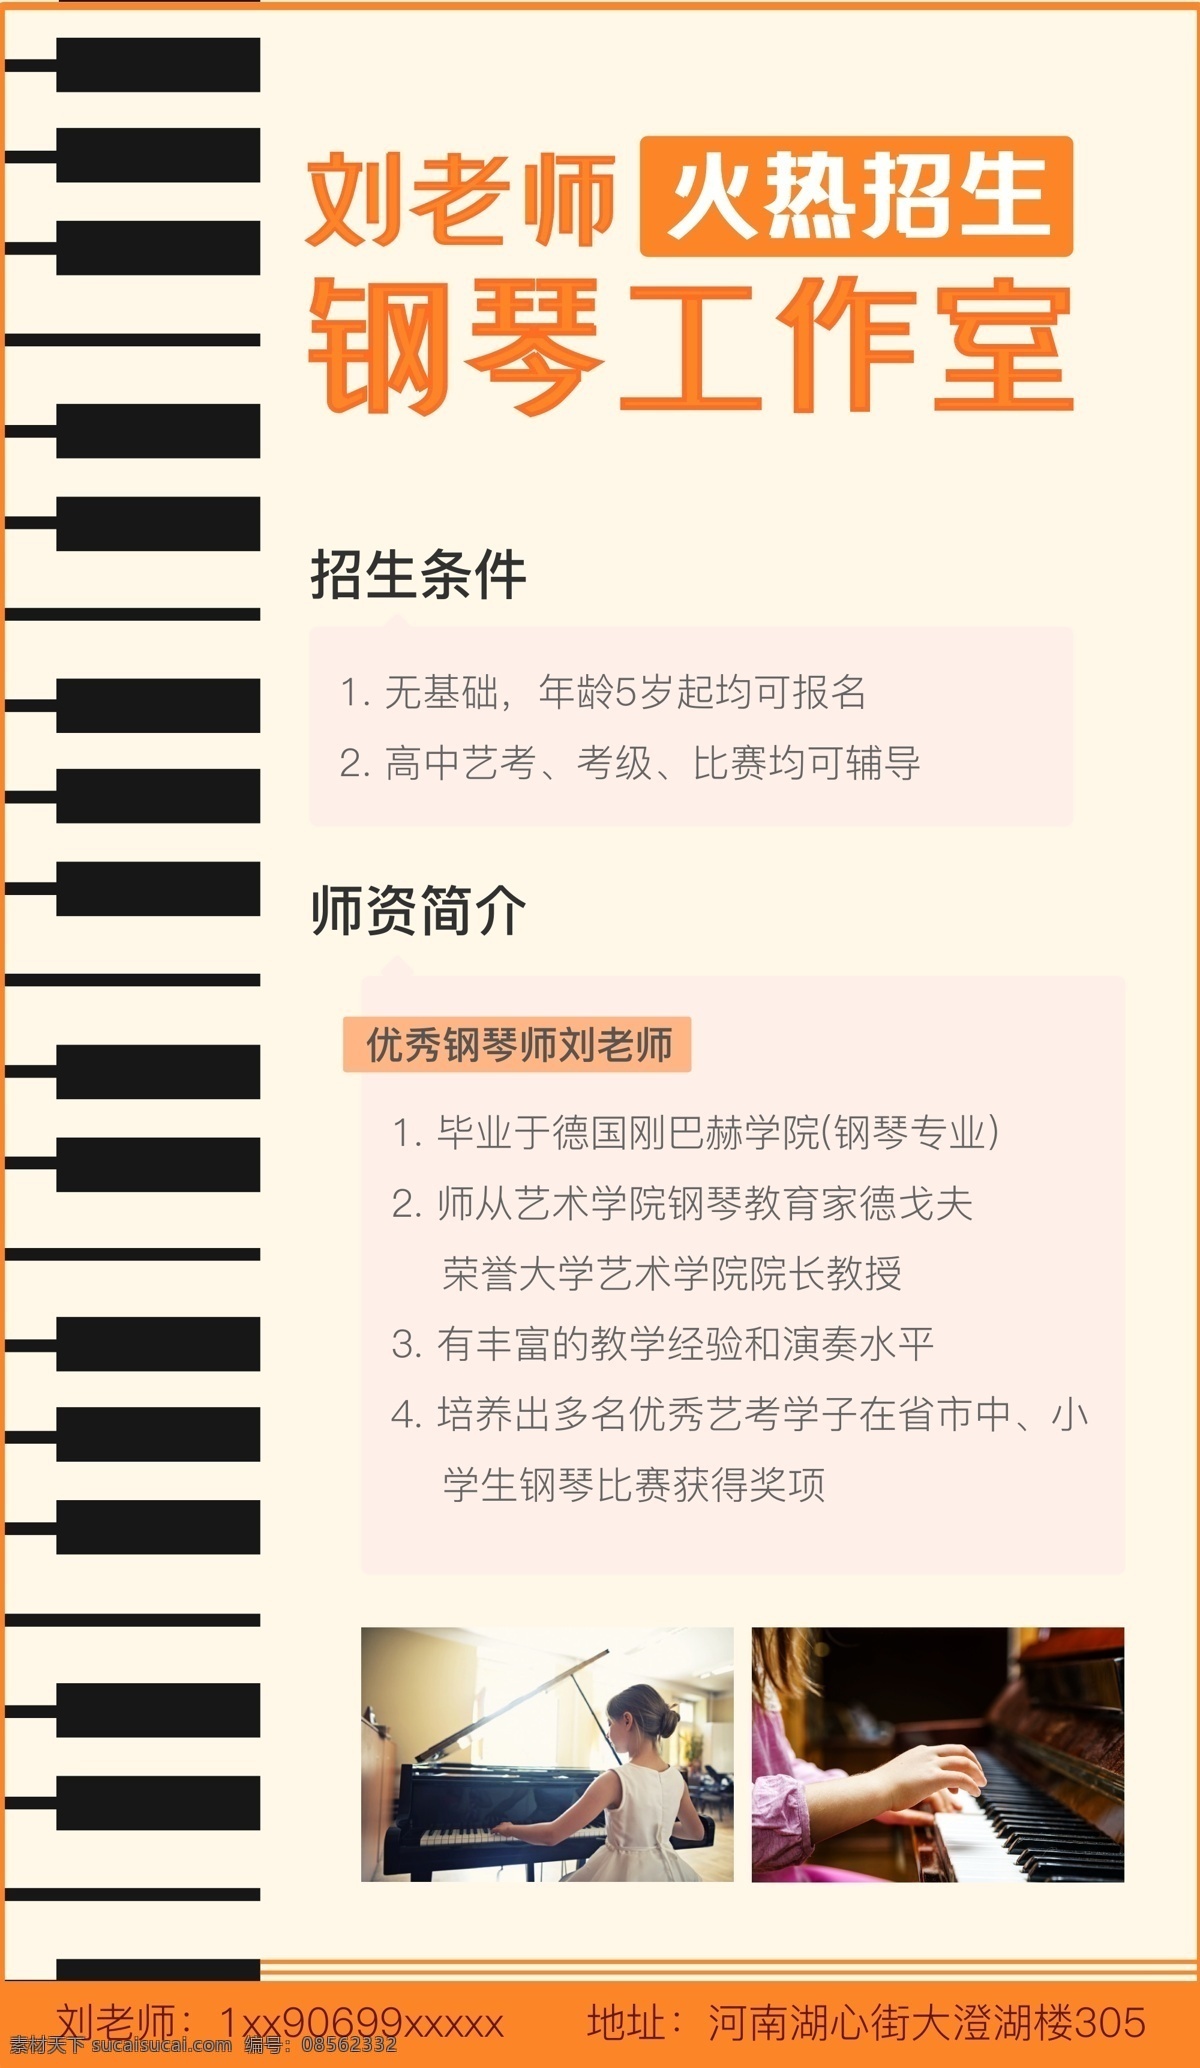 钢琴海报图片 钢琴 黑白键 优雅 火热招生 招生广告 弹琴 文化艺术 舞蹈音乐